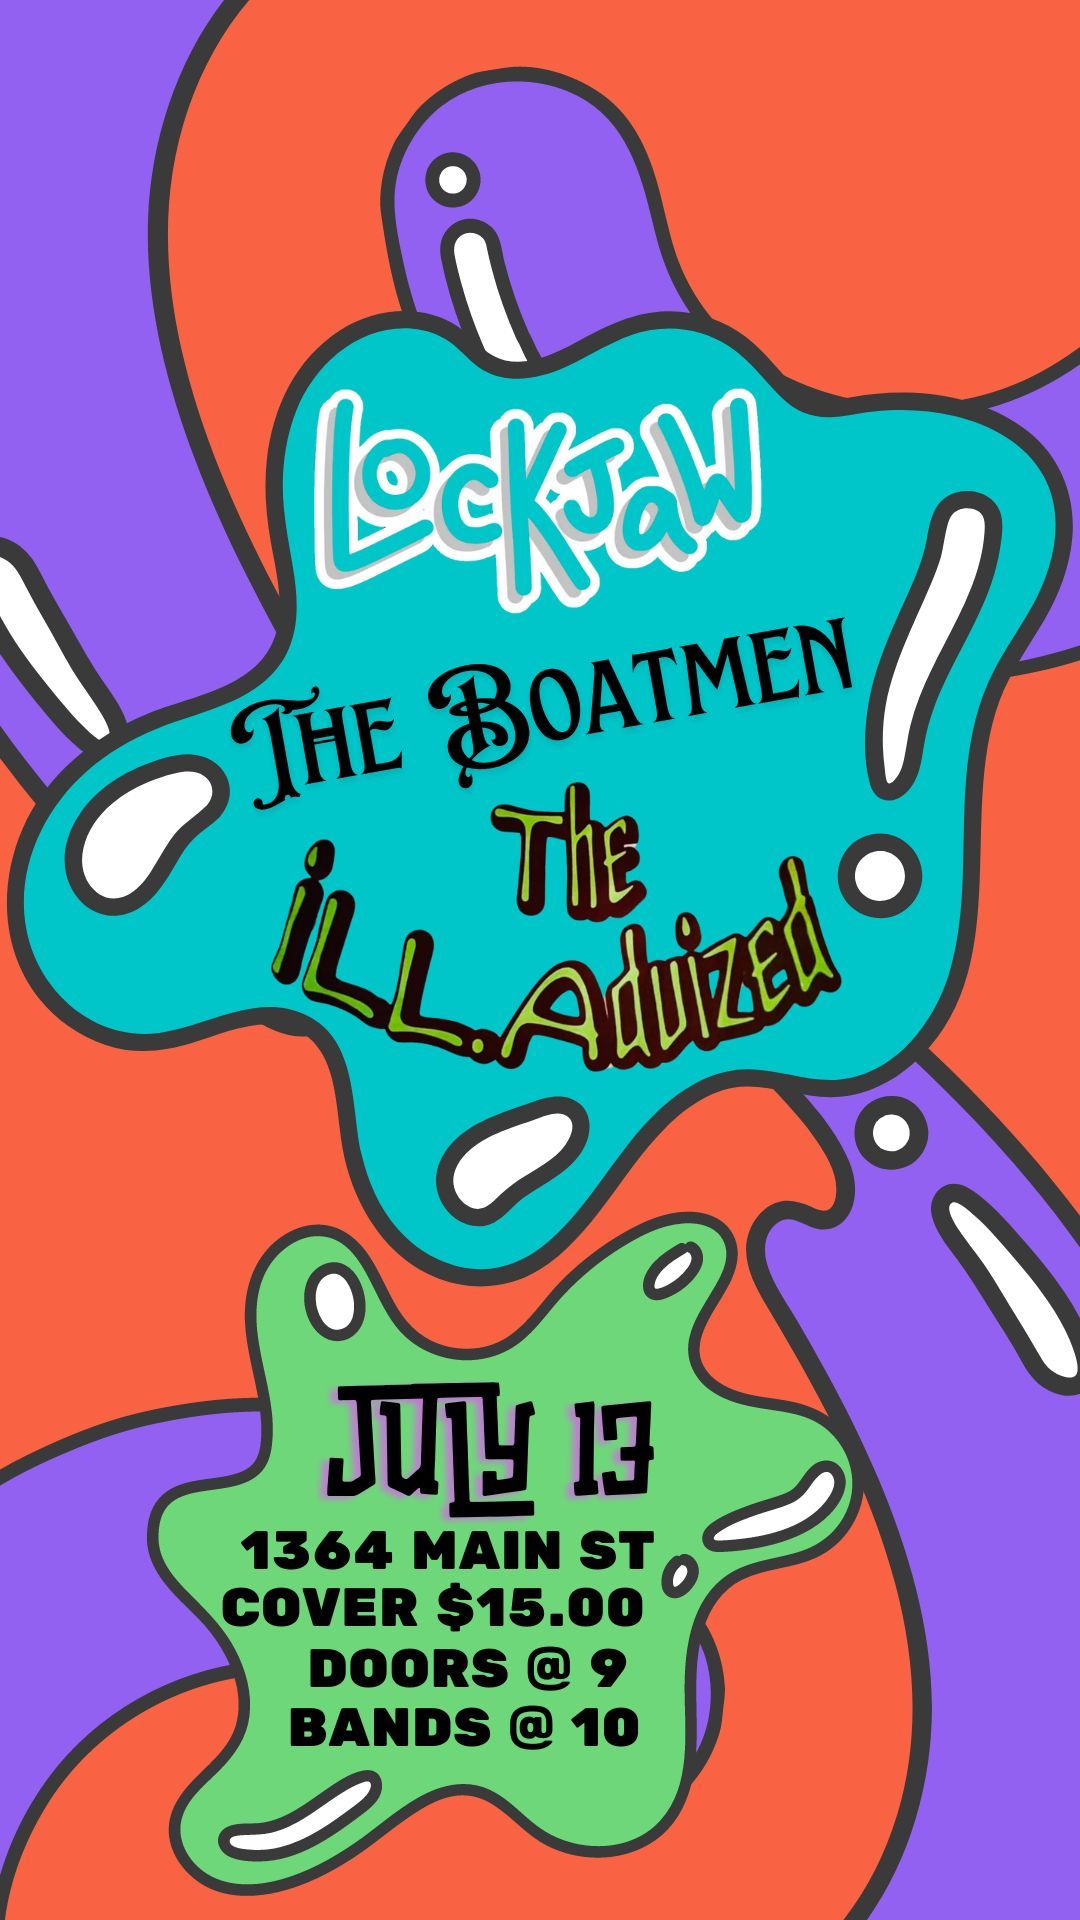 ill Advized, The Boatmen and Lockjaw